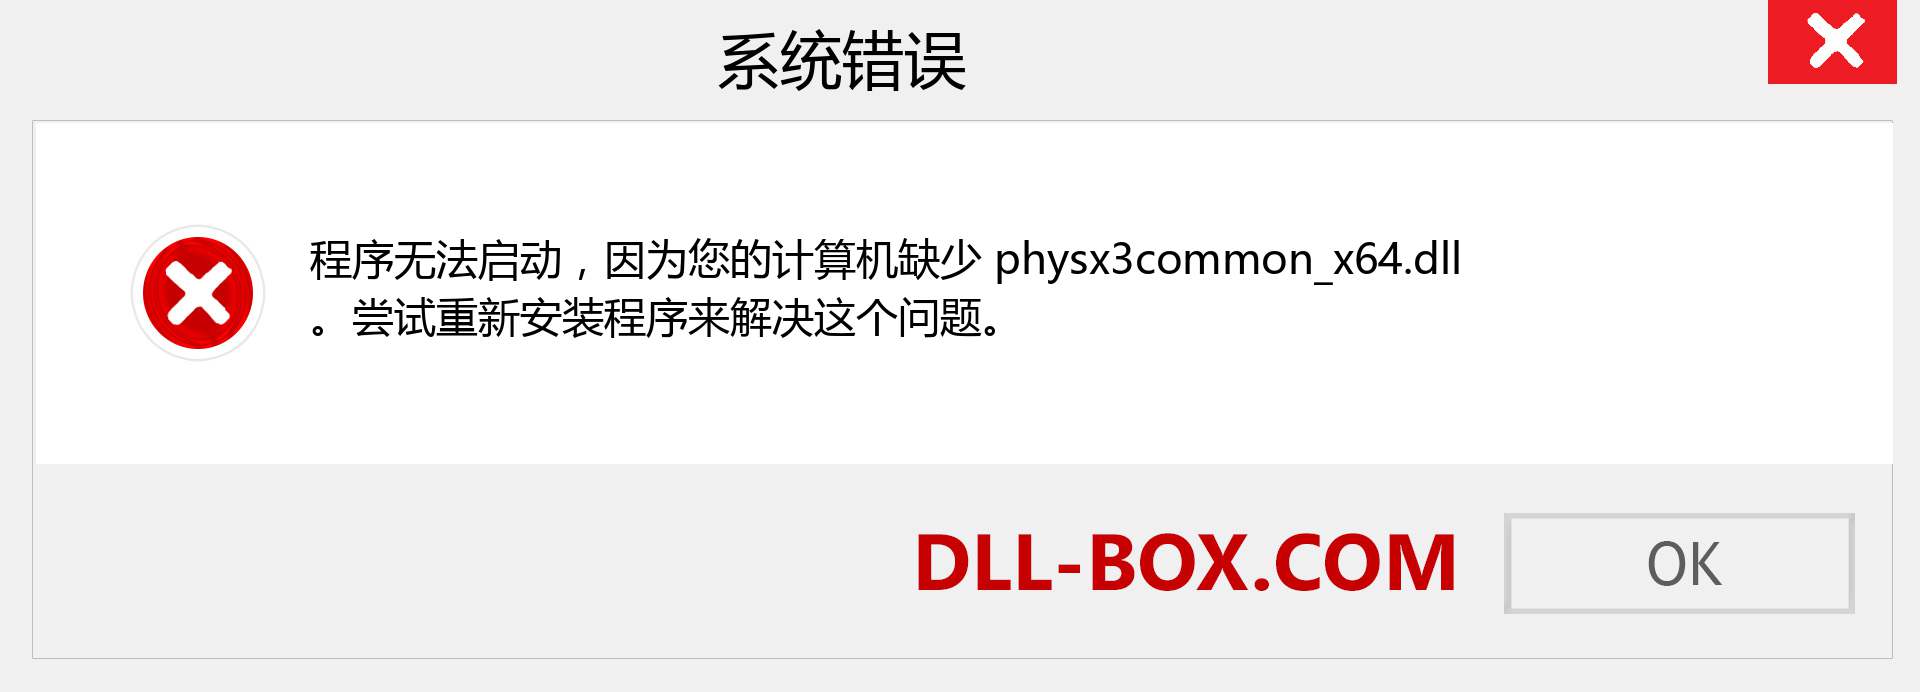 physx3common_x64.dll 文件丢失？。 适用于 Windows 7、8、10 的下载 - 修复 Windows、照片、图像上的 physx3common_x64 dll 丢失错误